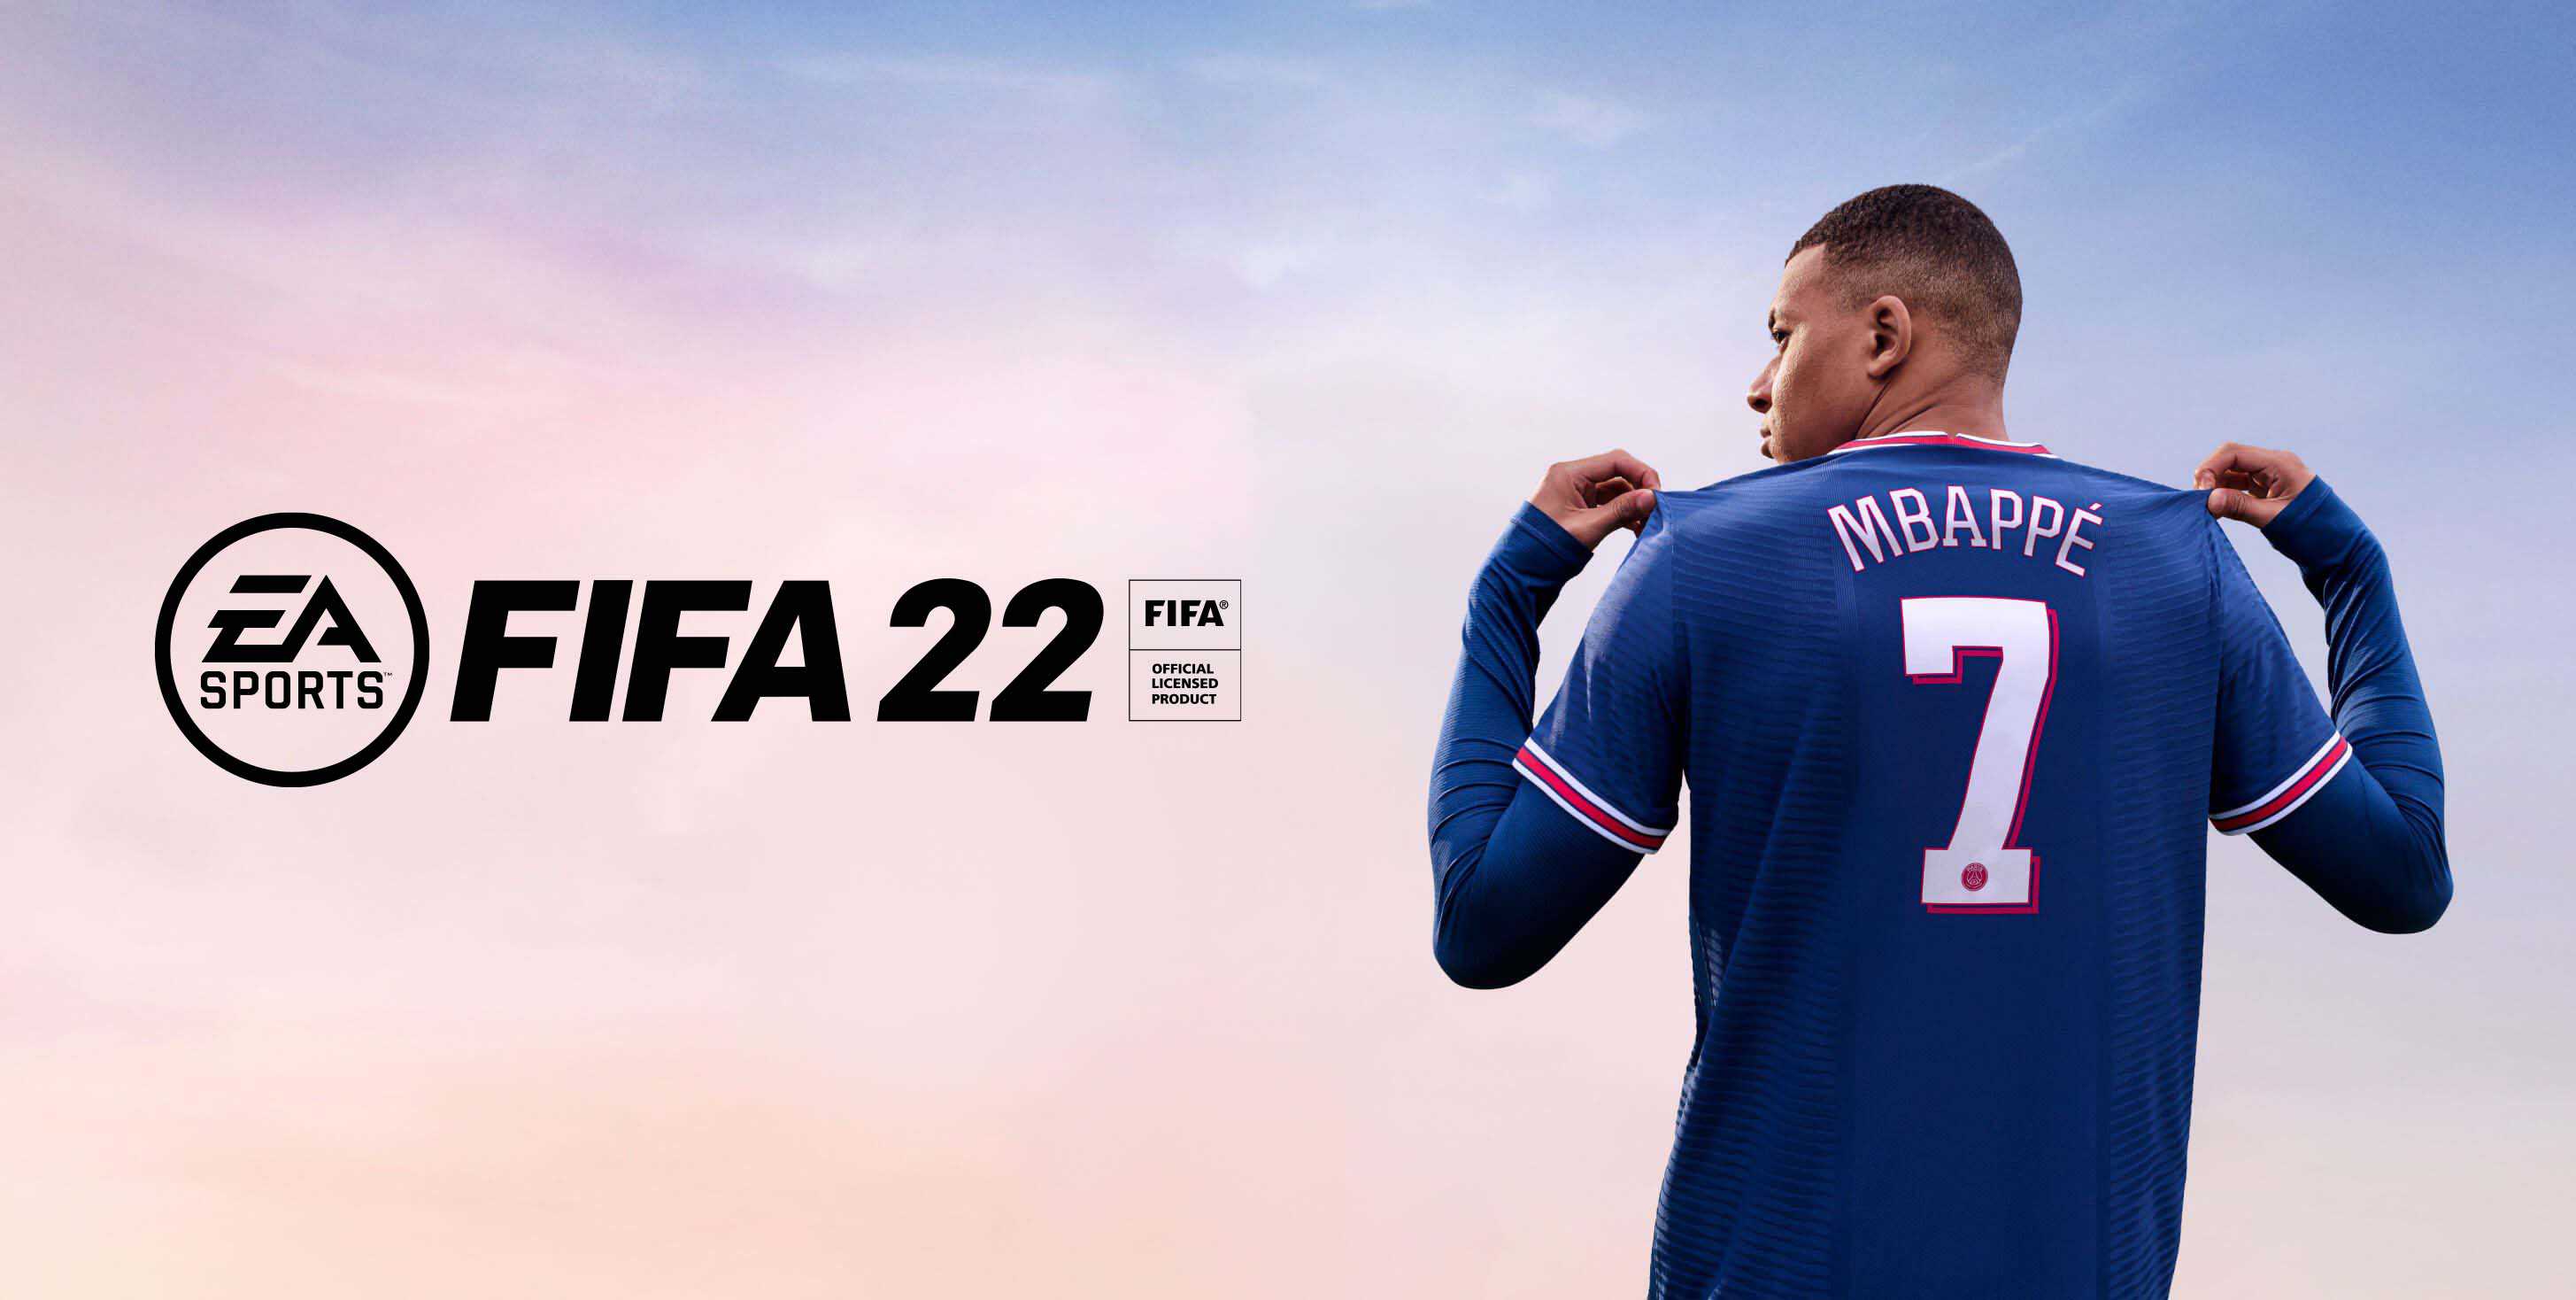 Toutes les nouveautés sur FIFA 22